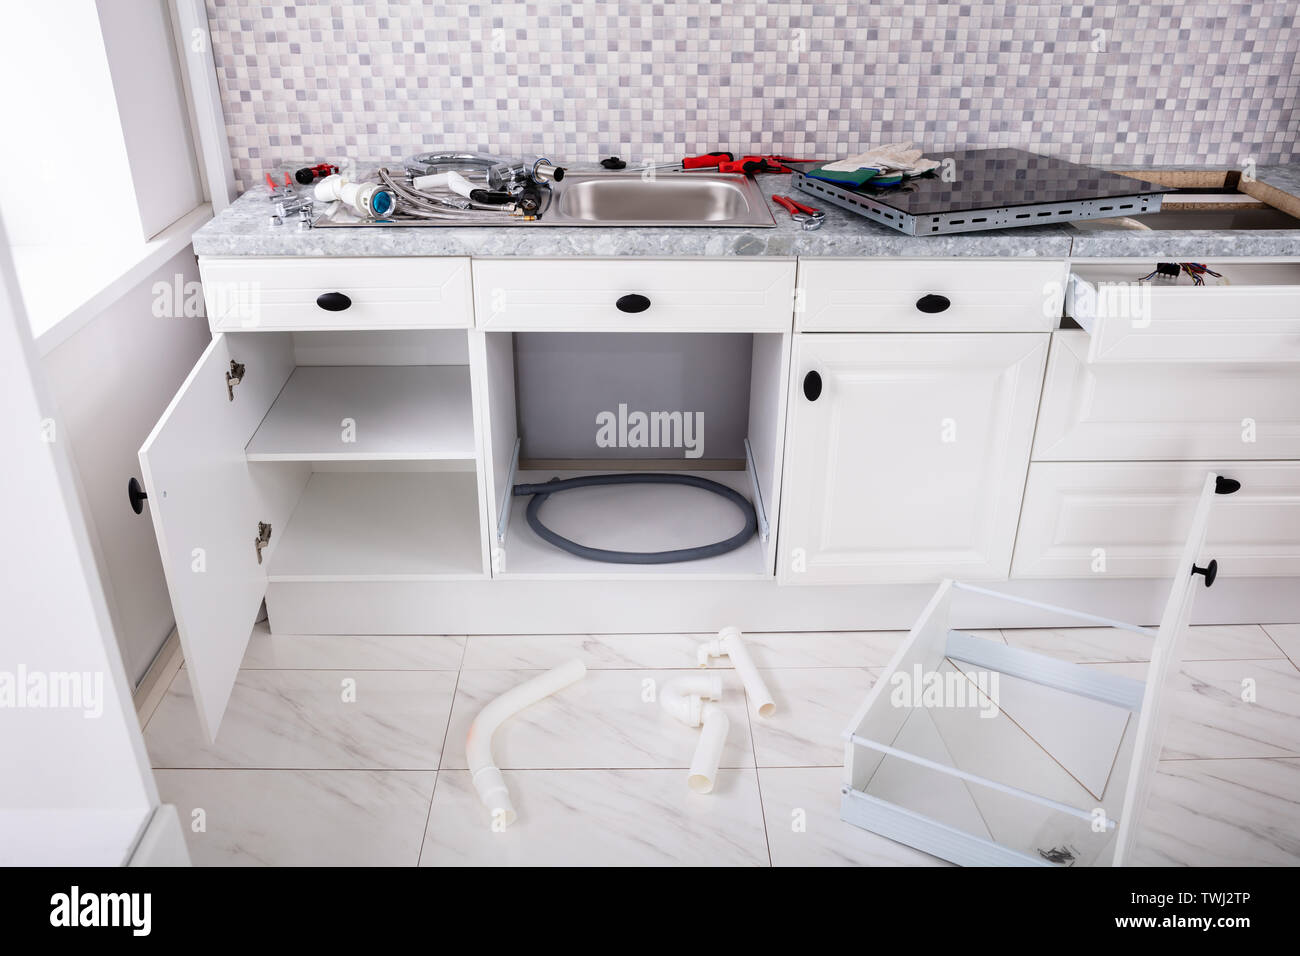 Instalación de una cocina eléctrica vitrocerámica de inducción y el  fregadero de la cocina con muebles herramientas Fotografía de stock - Alamy